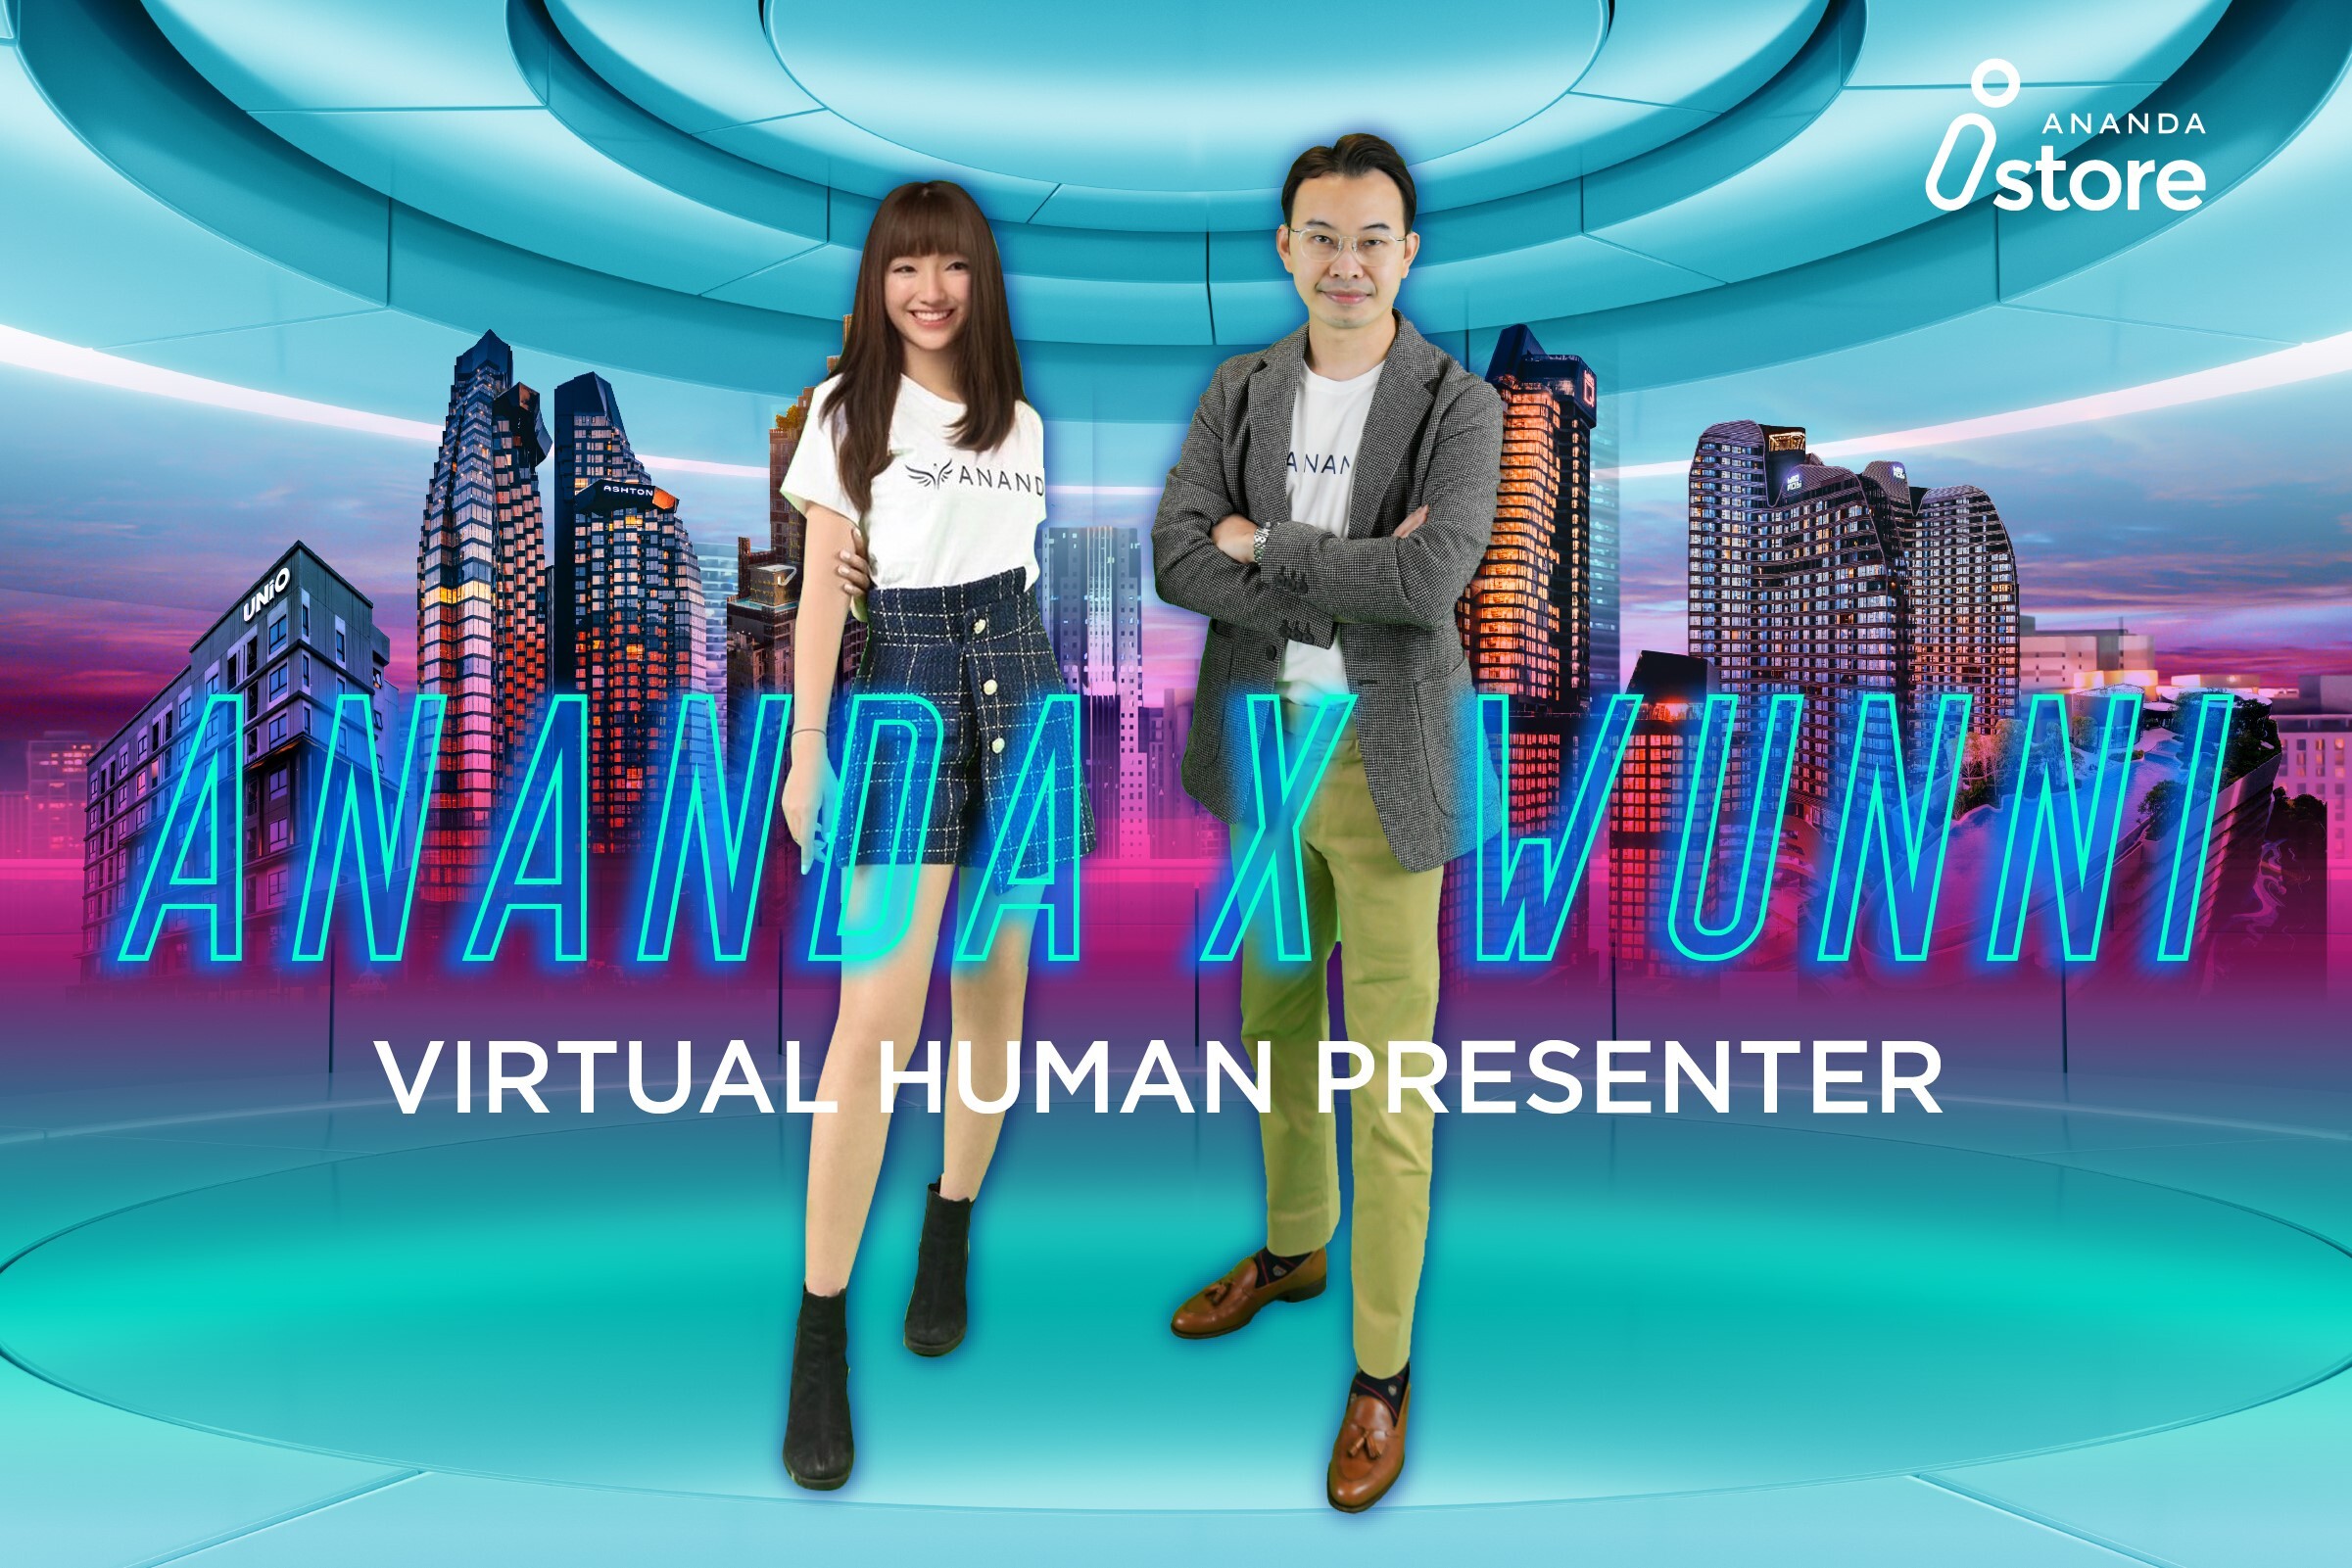 อนันดาฯ เตรียมก้าวสู่ยุค Metaverse เปิดตัว "น้องวันนี้ (Wunni)" อินฟลูเอนเซอร์เสมือนจริงคนใหม่ (Virtual human Presenter) หวังเจาะลูกค้าคนเมือง Gen C คนรุ่นใหม่